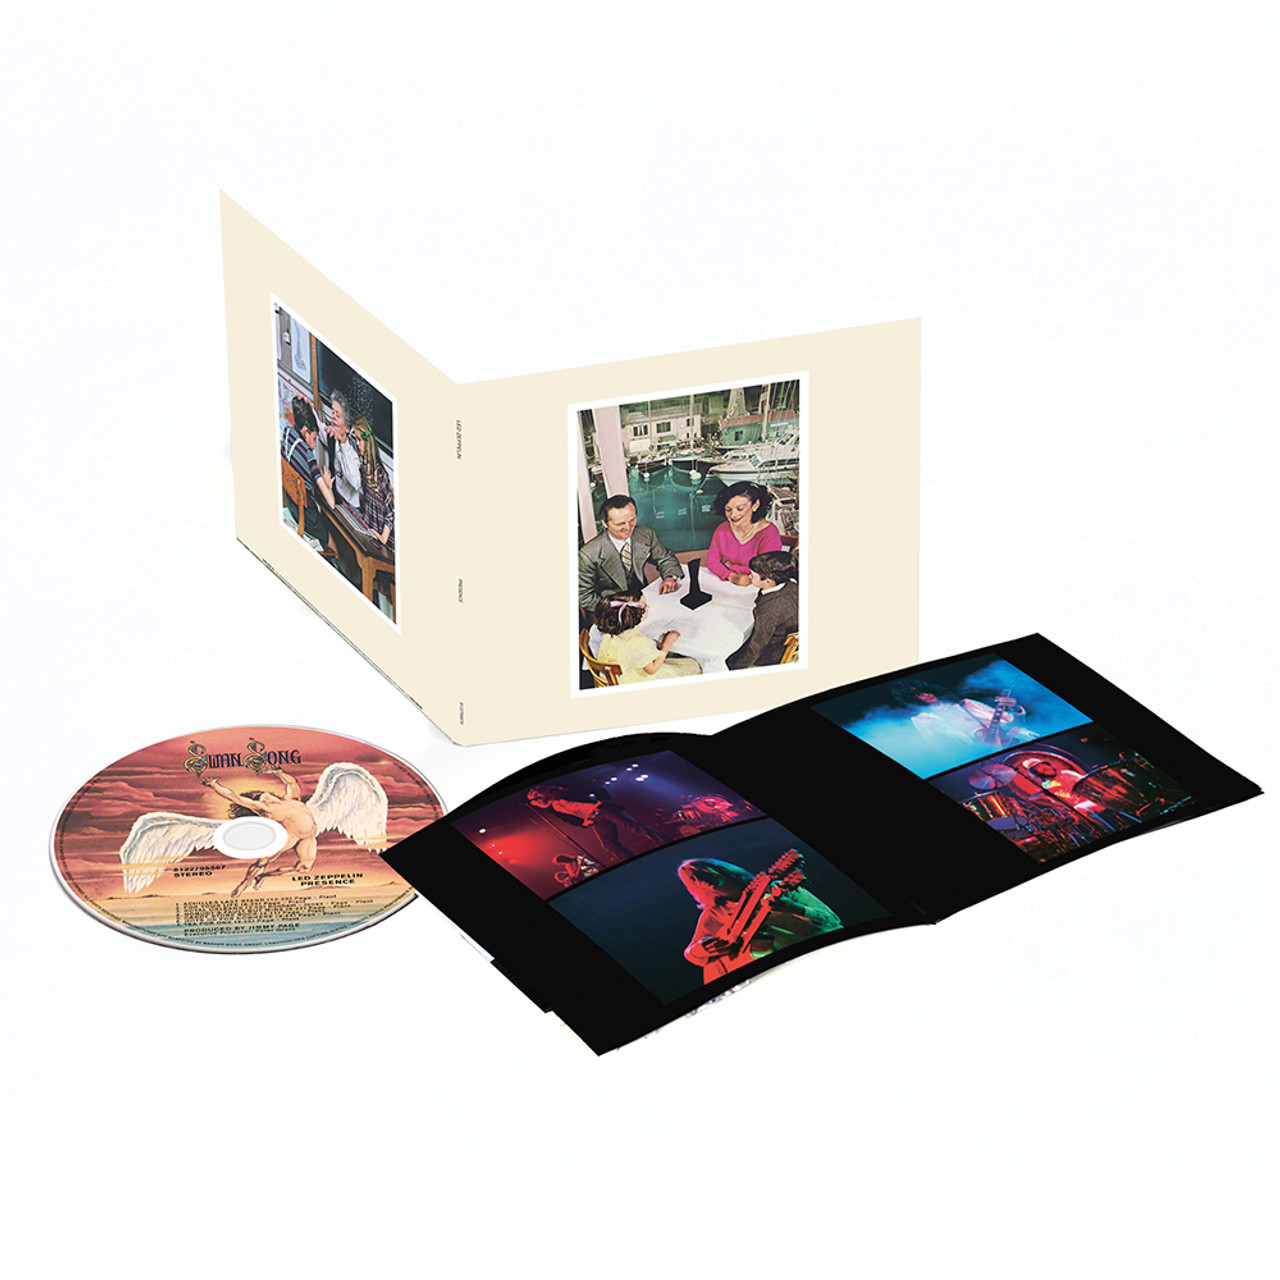 Led Zeppelin Presence CD